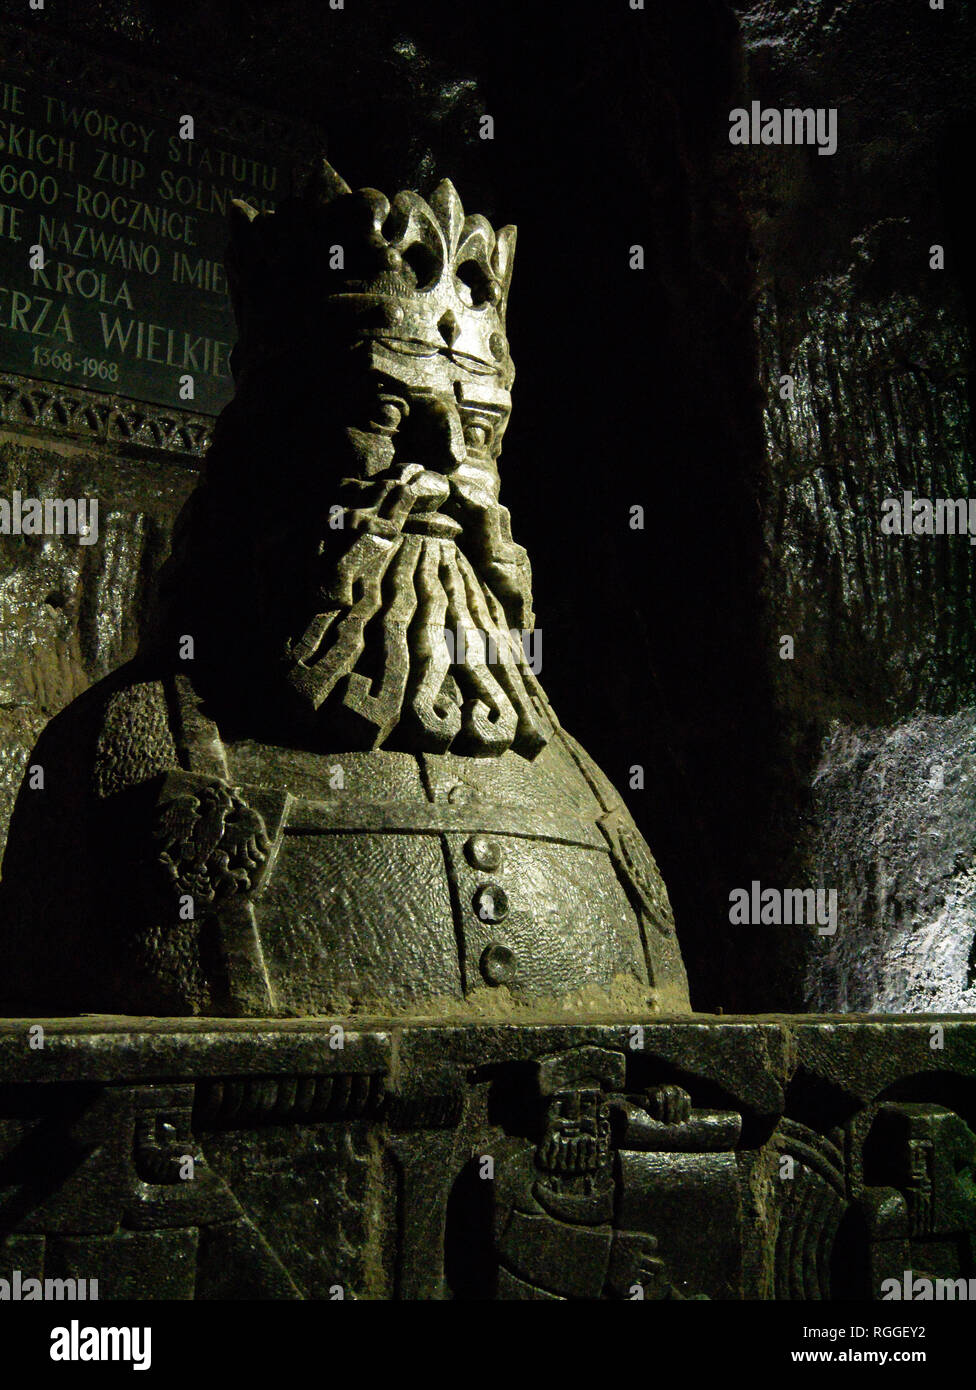 Statue of King Casimir III the Great, Wieliczka Salt Mine, Wieliczka, Poland Stock Photo